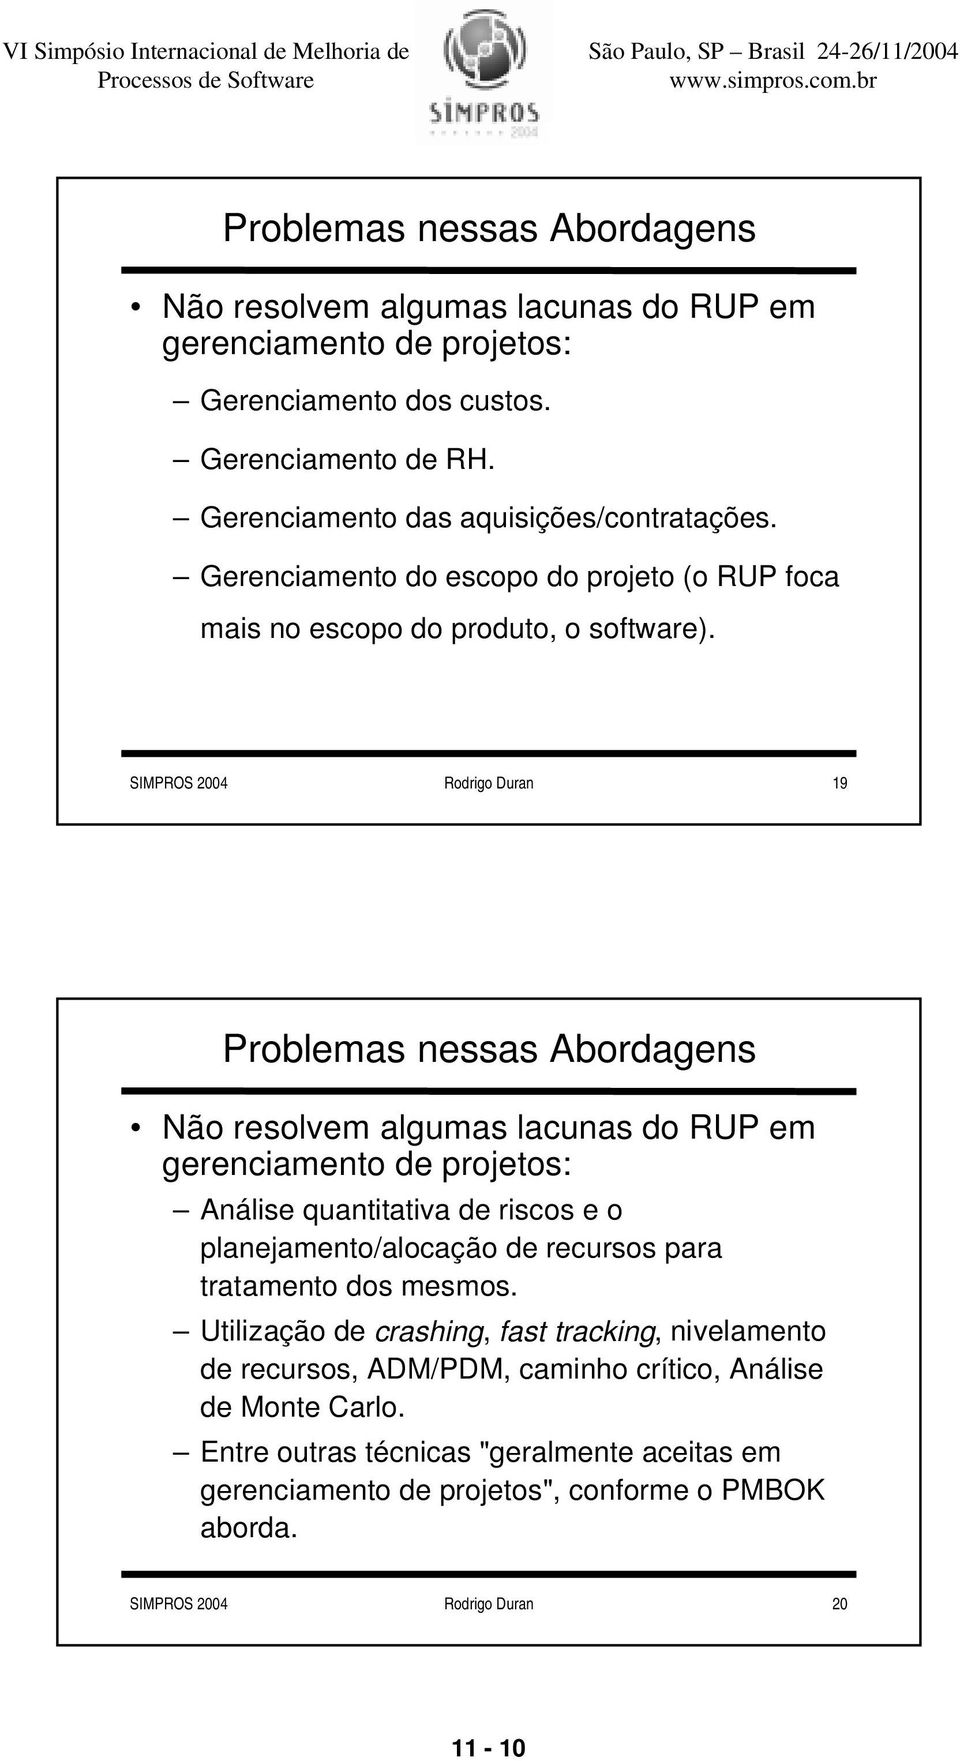 SIMPROS 2004 Rodrigo Duran 19 Problemas nessas Abordagens Não resolvem algumas lacunas do RUP em gerenciamento de projetos: Análise quantitativa de riscos e o planejamento/alocação de